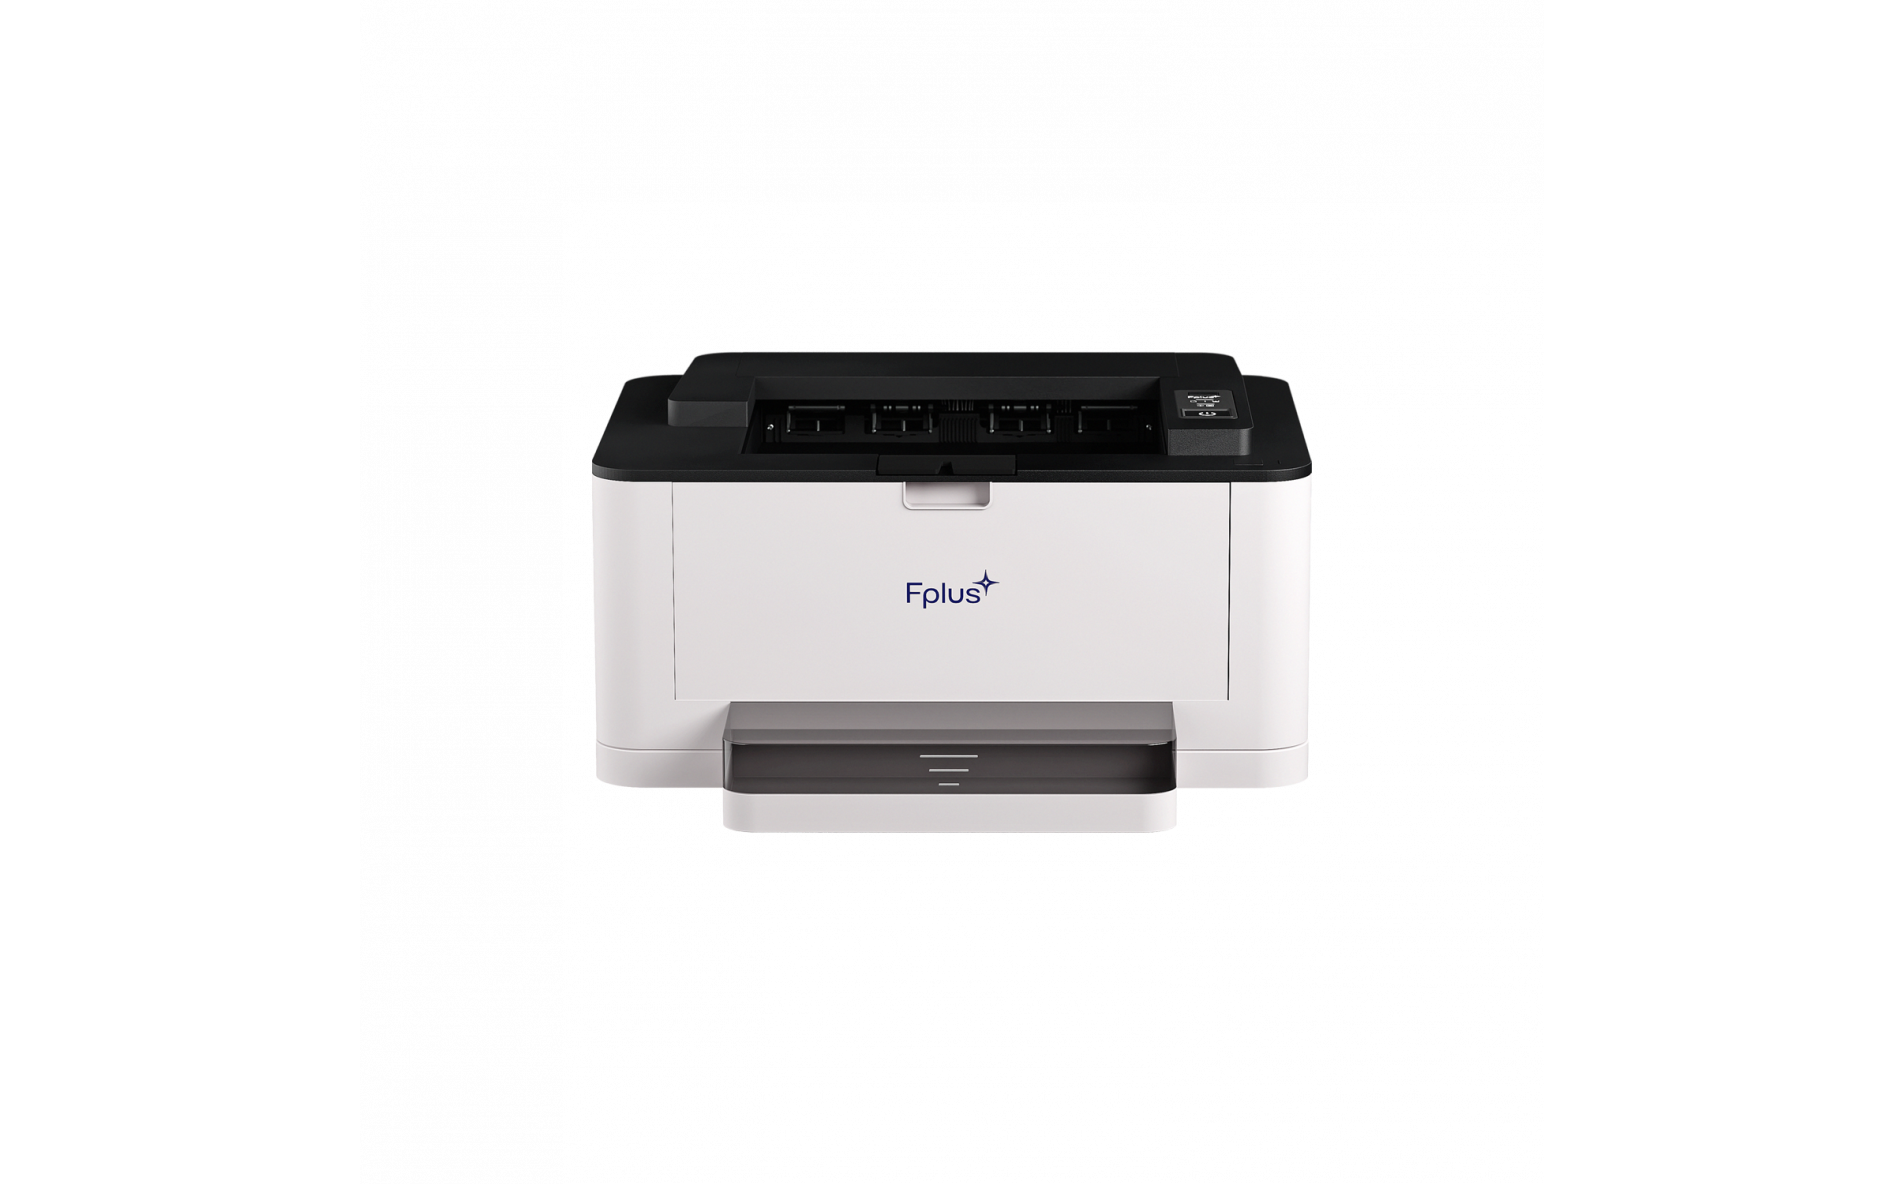 Принтер лазерный Fplus PB301DN, A4, ч/б, 30 стр/мин (A4 ч/б), 1200x1200 dpi, дуплекс, сетевой, USB, белый/черный (PB301DN), цвет белый/черный